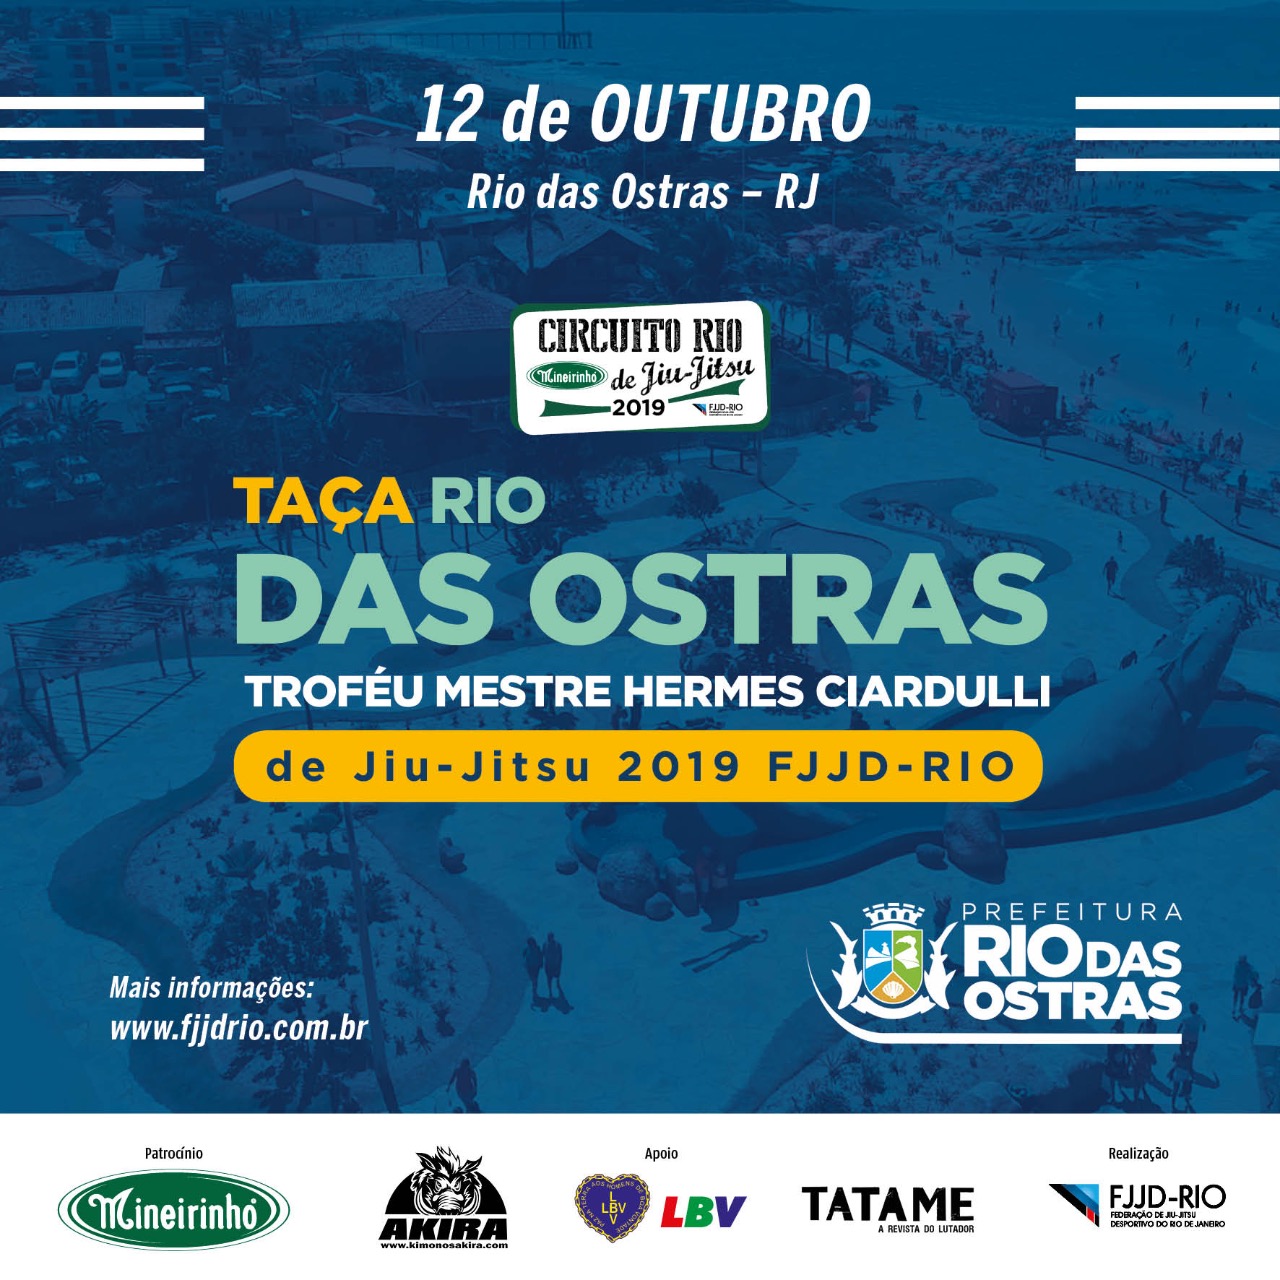 Professores de Rio das Ostras (RJ) celebram edição da Taça Rio na cidade em outubro: ‘Vai fortalecer muito o Jiu-Jitsu local’